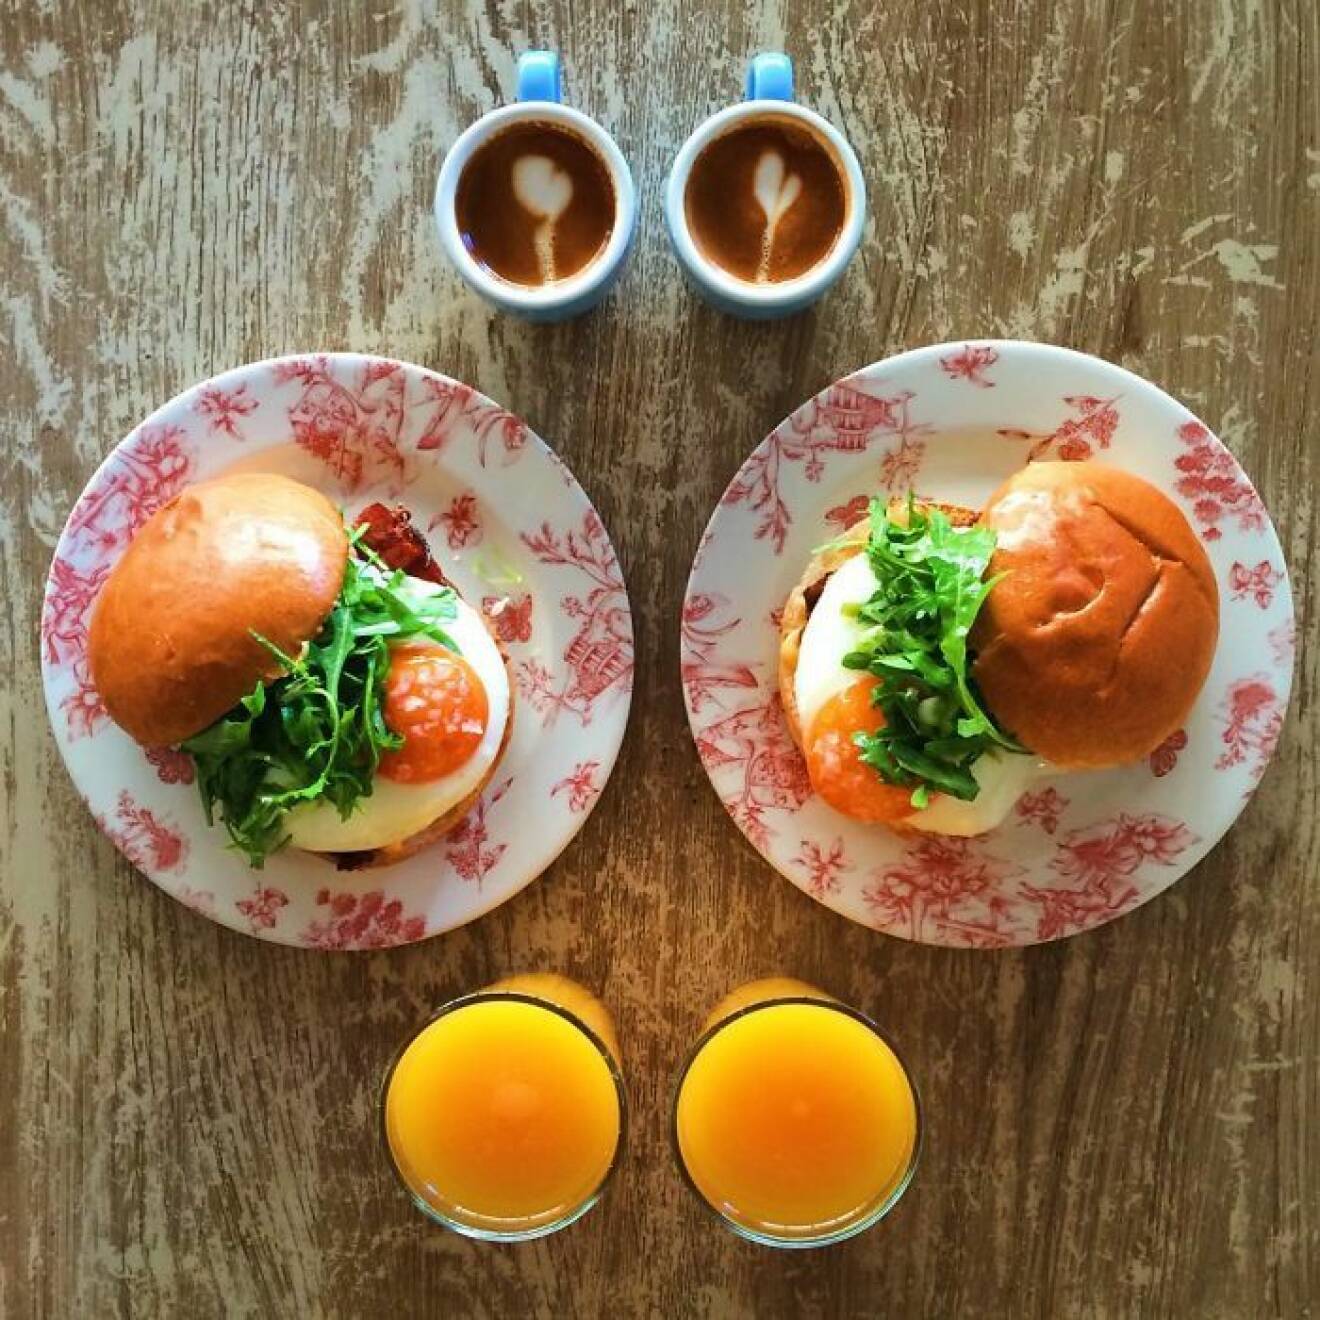 12. symmetry-breakfast-food-photography-michael-zee-63__700